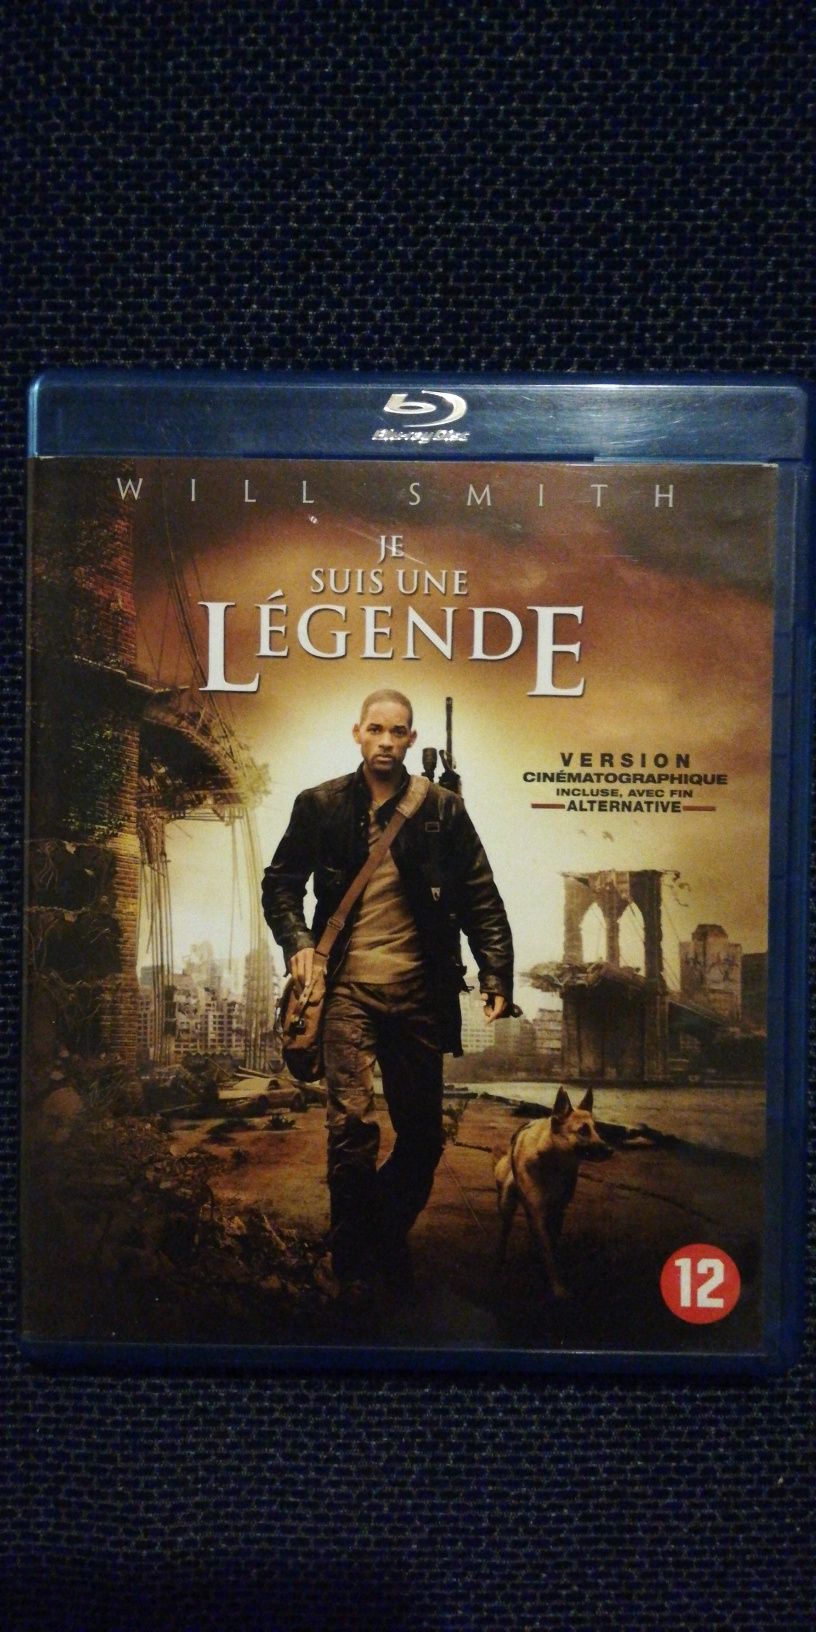 Blu ray do filme "Eu Sou a Lenda", Will Smith (portes grátis)